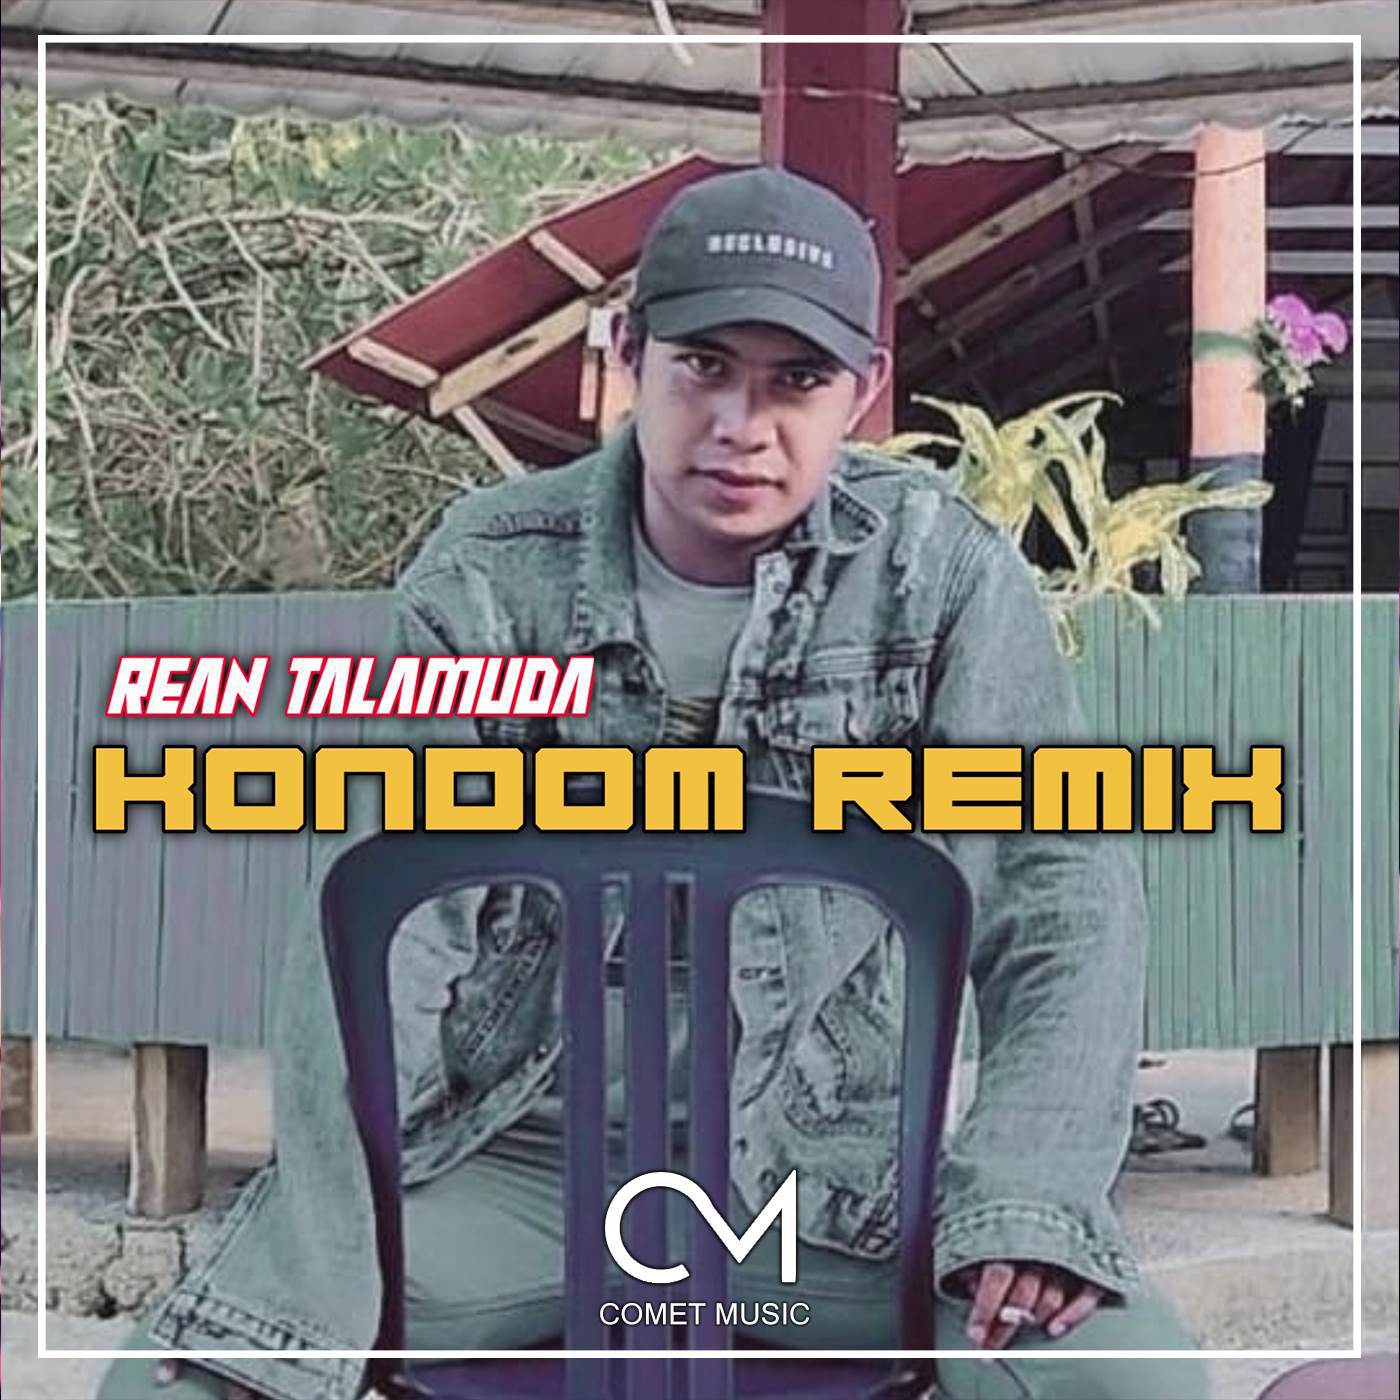 Rean Talamuda - DJ KONDOM